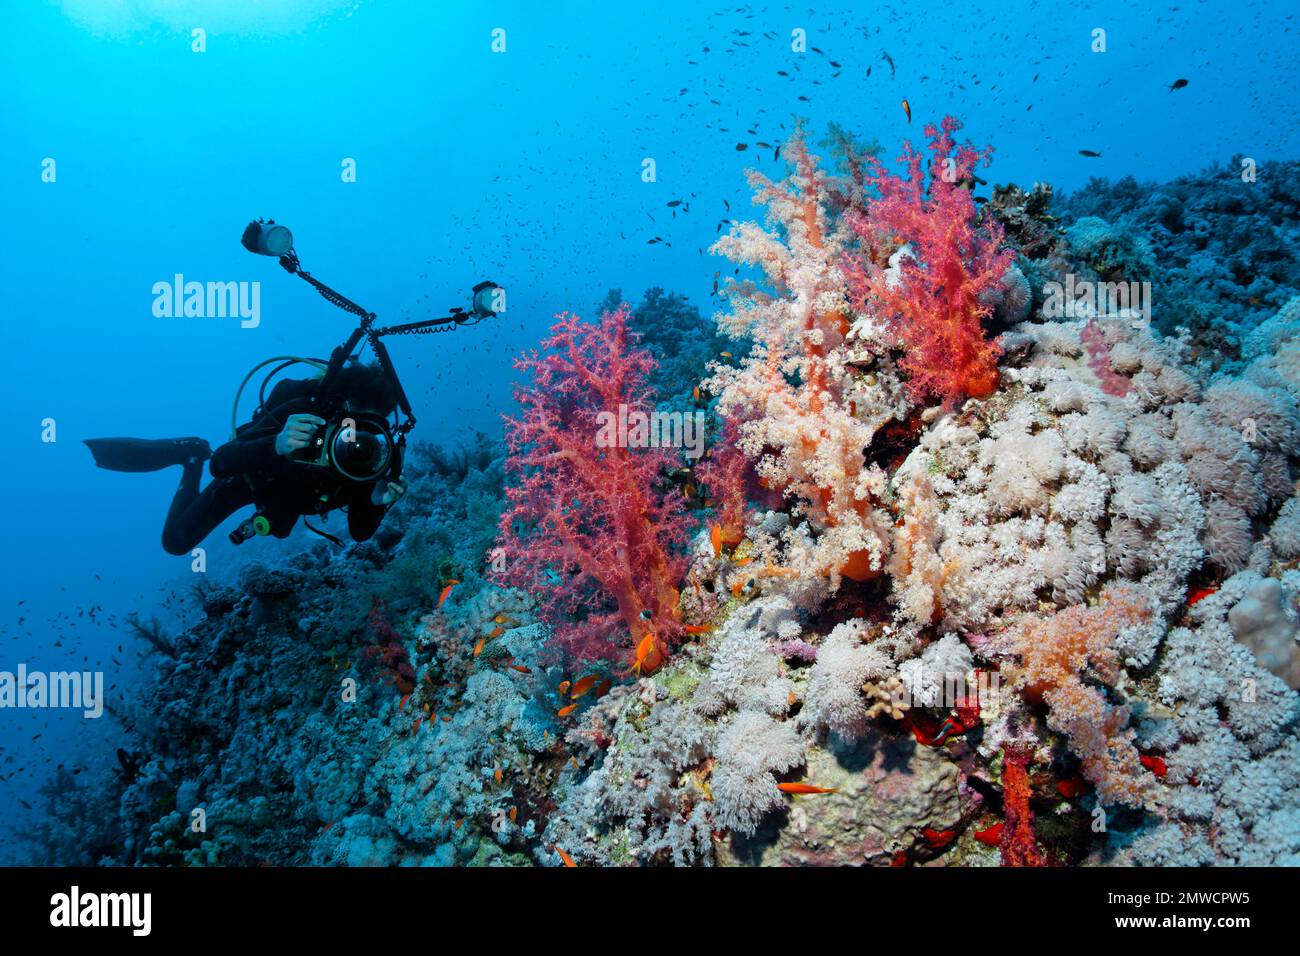 Taucher, Unterwasserfotograf, am South Plateau Elphinstone Reef. Klunzinger klunzinger's soft Coral (Dendronephthya klunzingeri) Red und Xenia Stockfoto